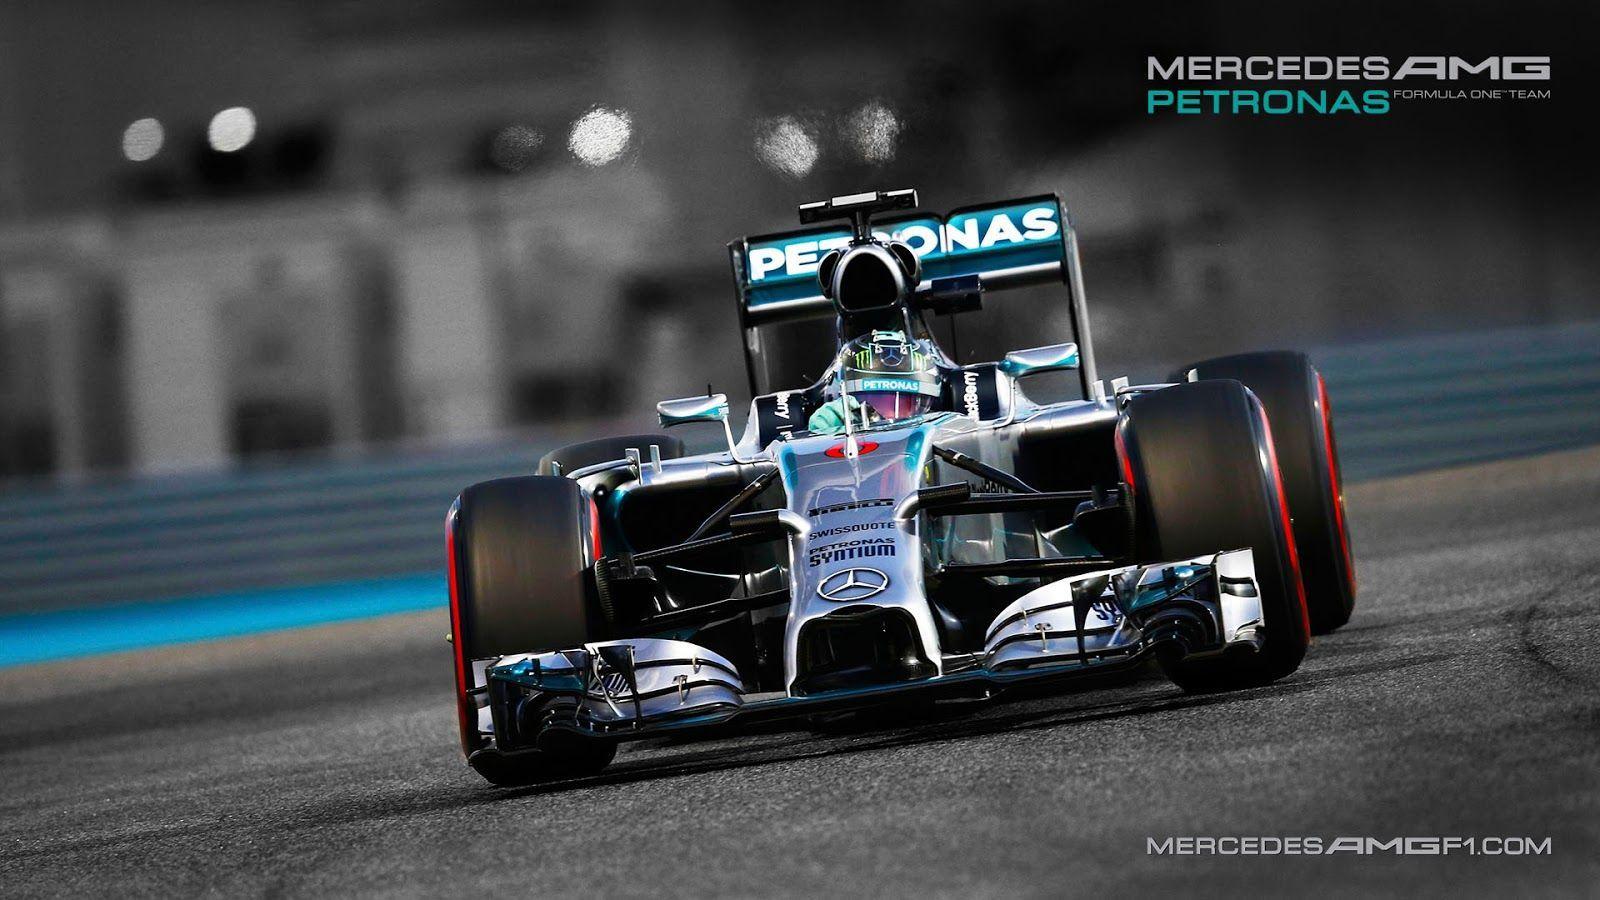 F1 Mercedes Wallpaper Desktop #OBT. Cars. Amg